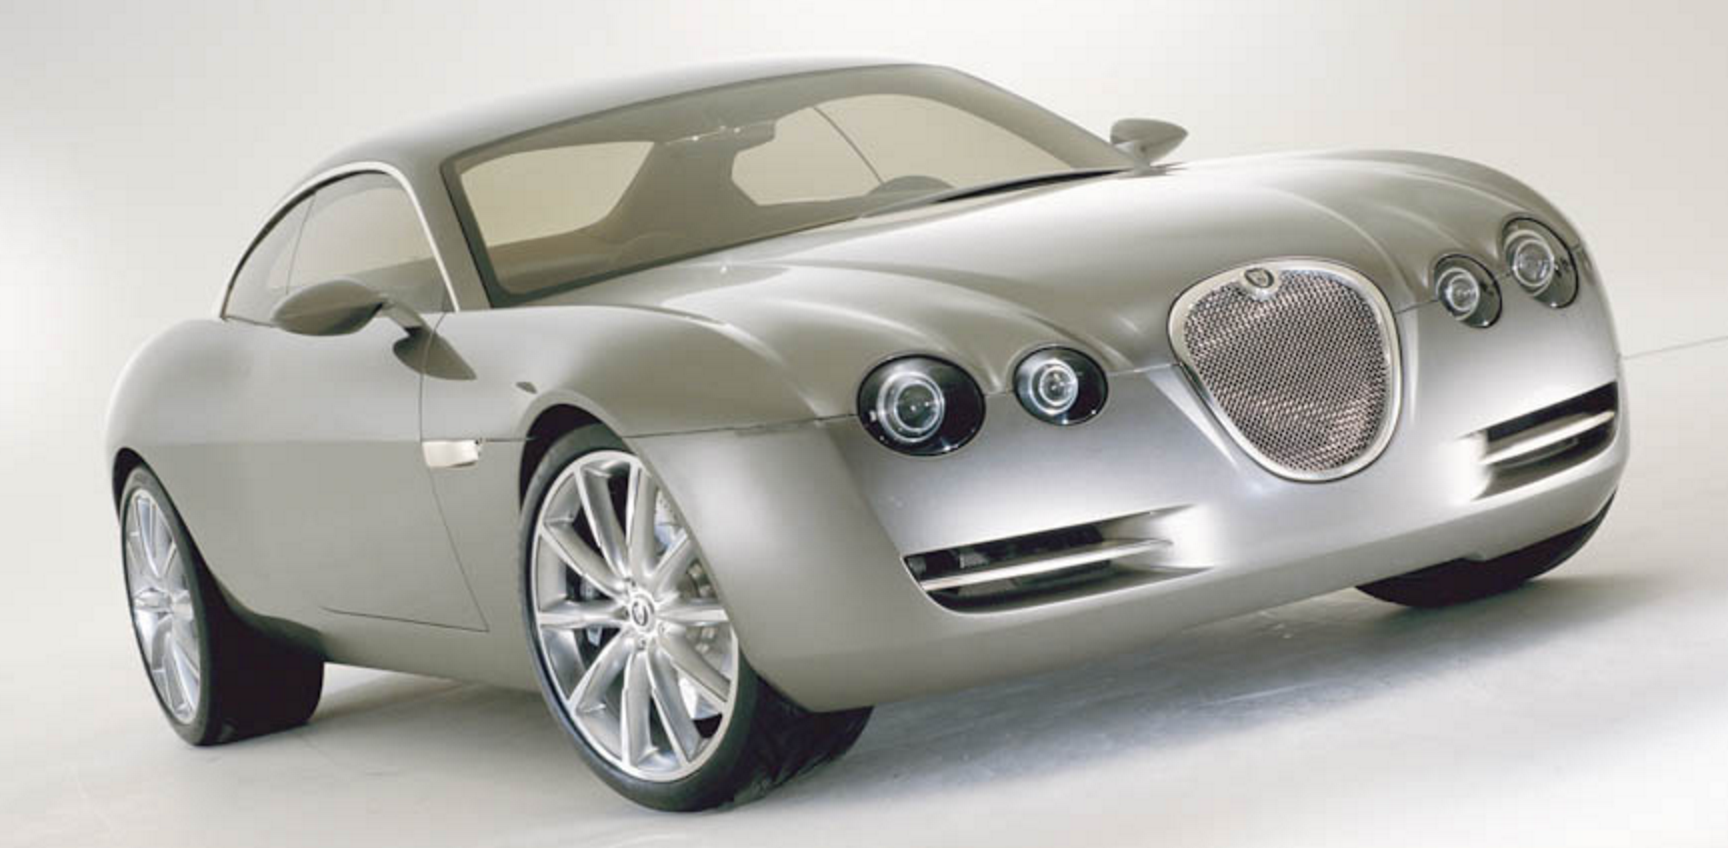 2001 Jaguar R-Coupe Concept | | SuperCars.net